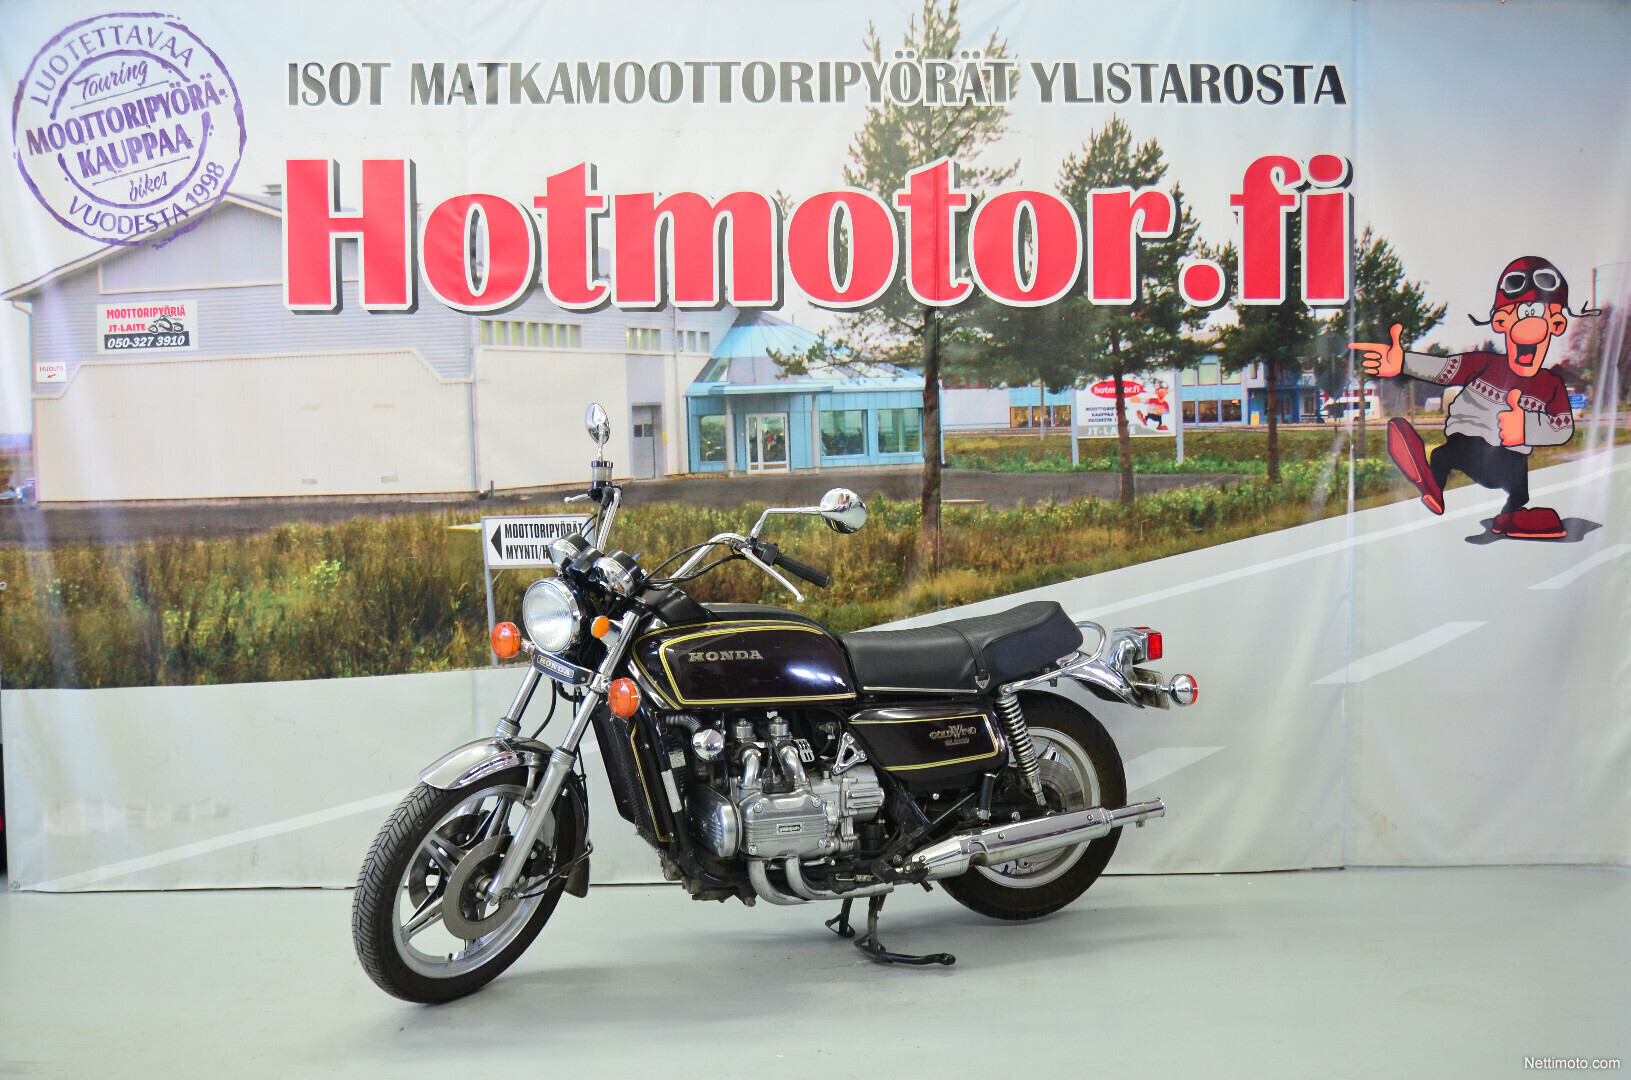 Honda GL 1000 GoldWing Museorekisteröity "tuplasti